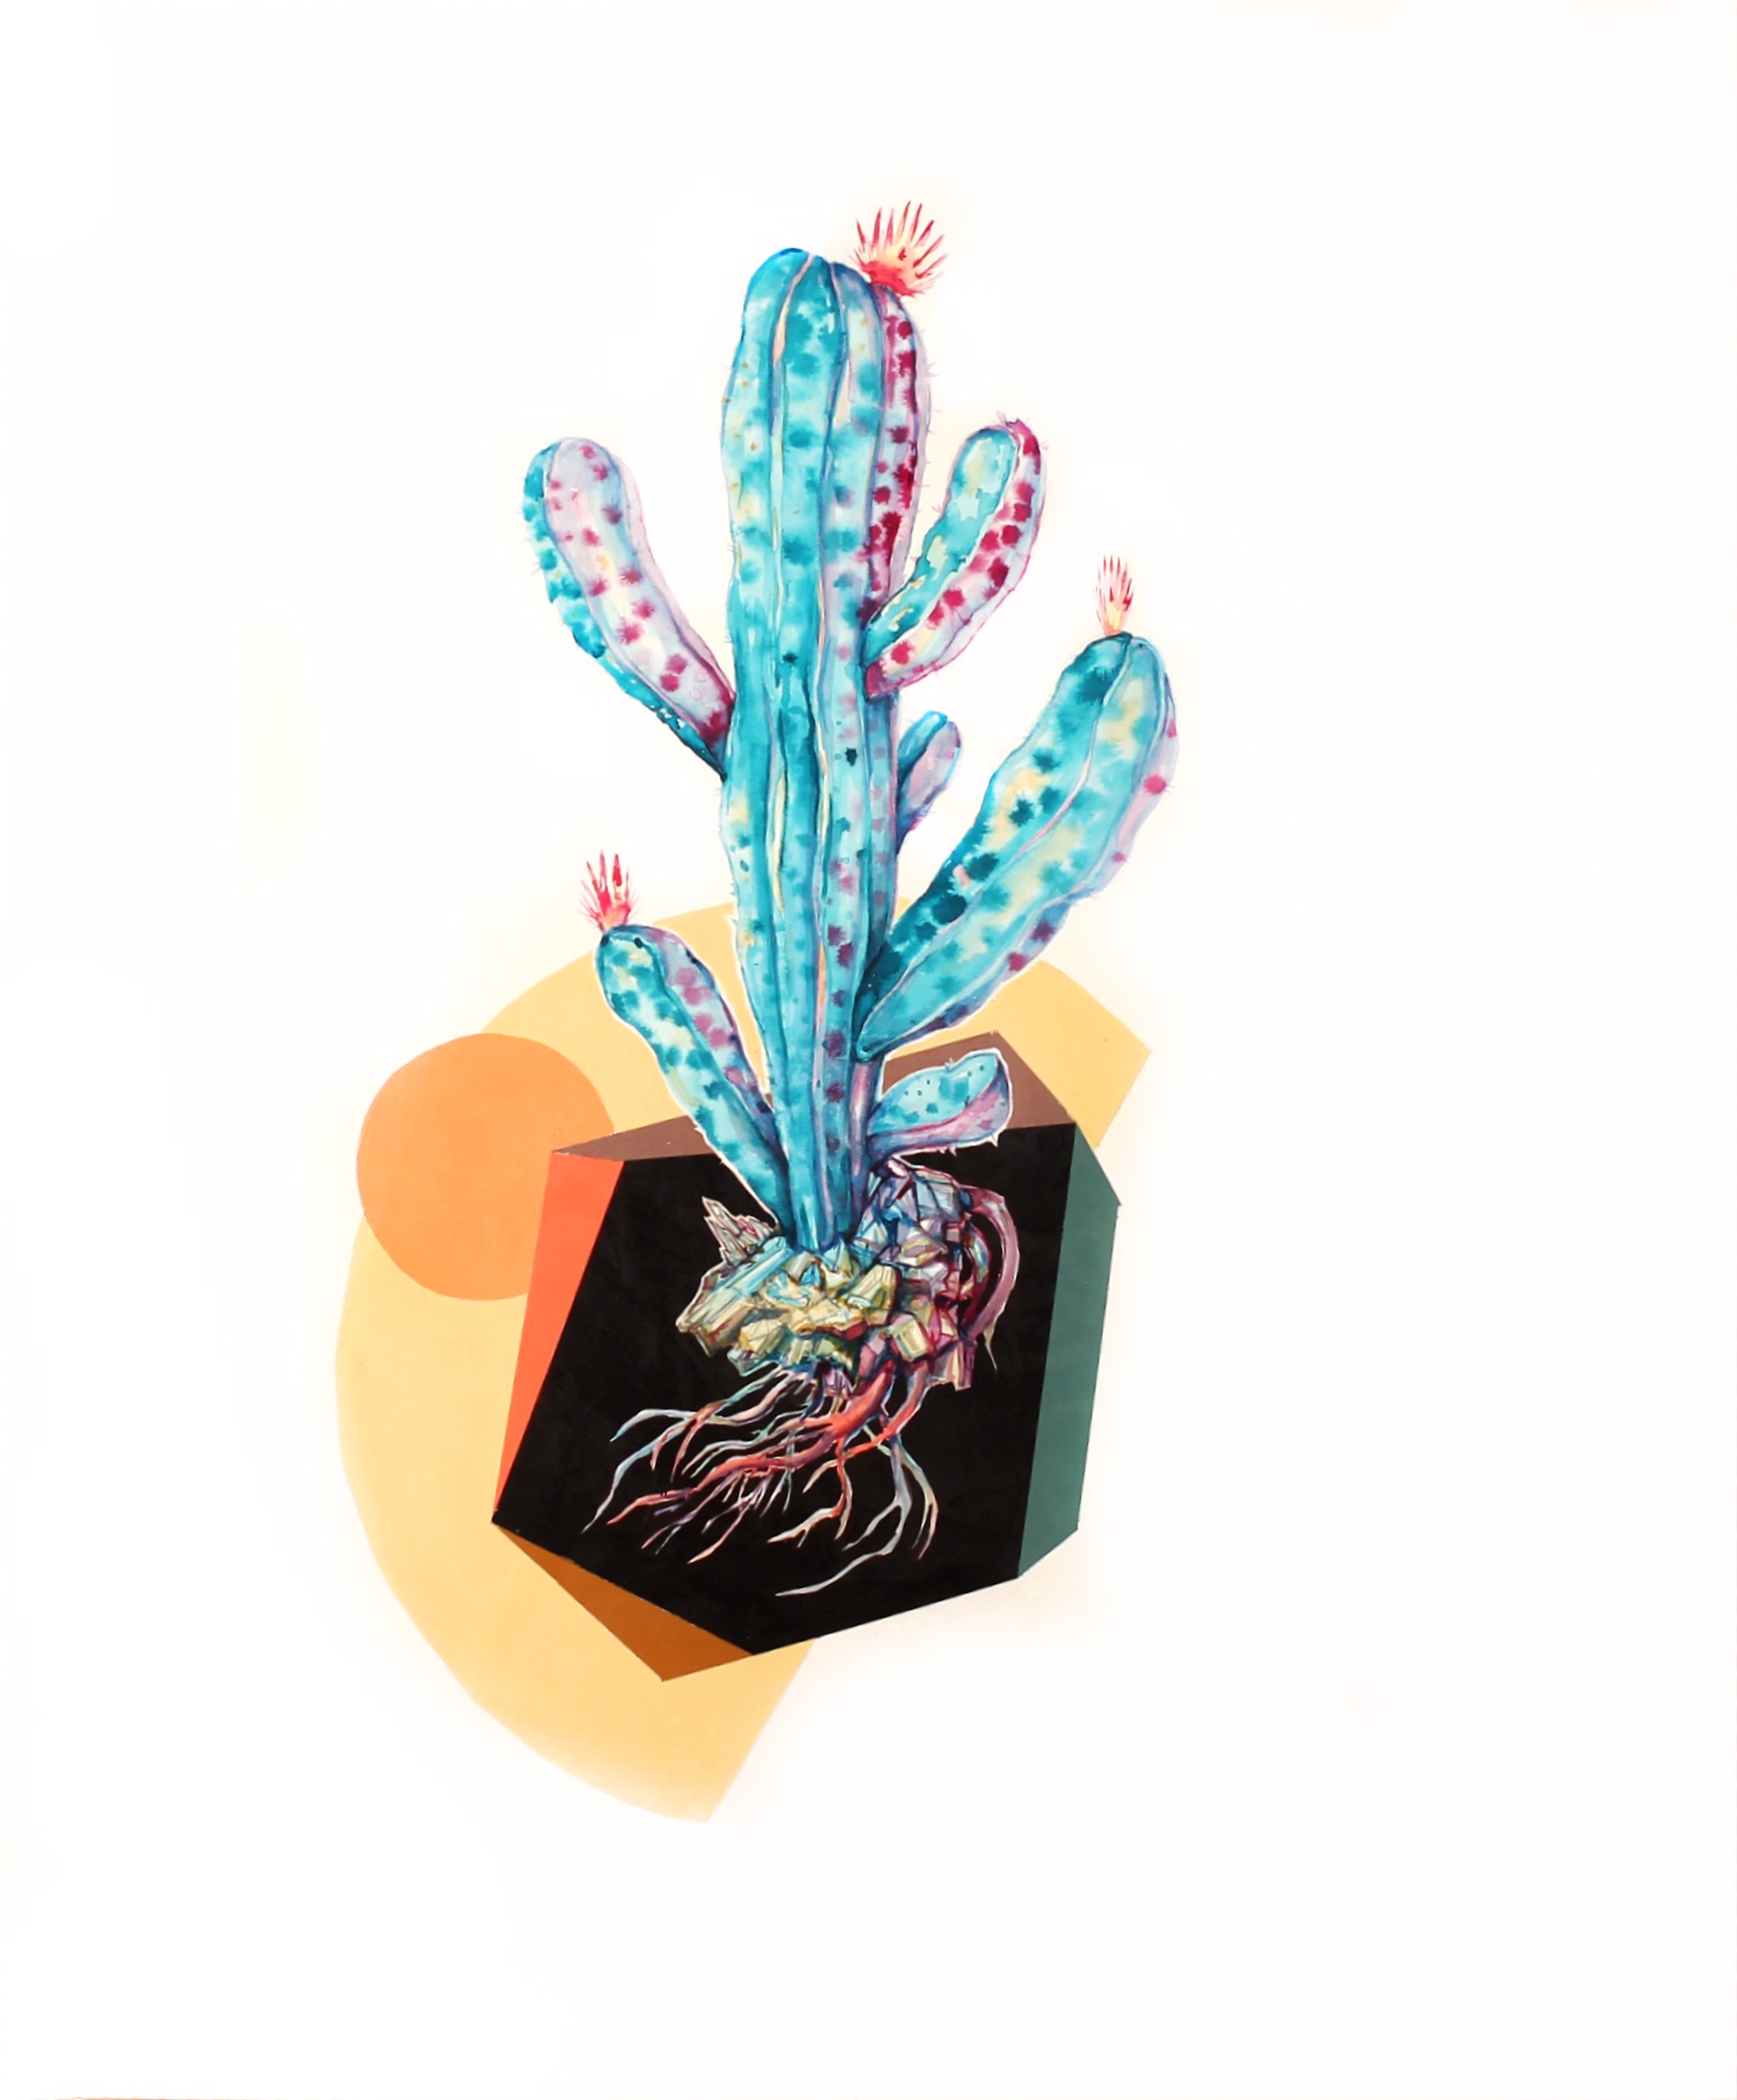 Rainbow Cactus II by Todd Ryan White